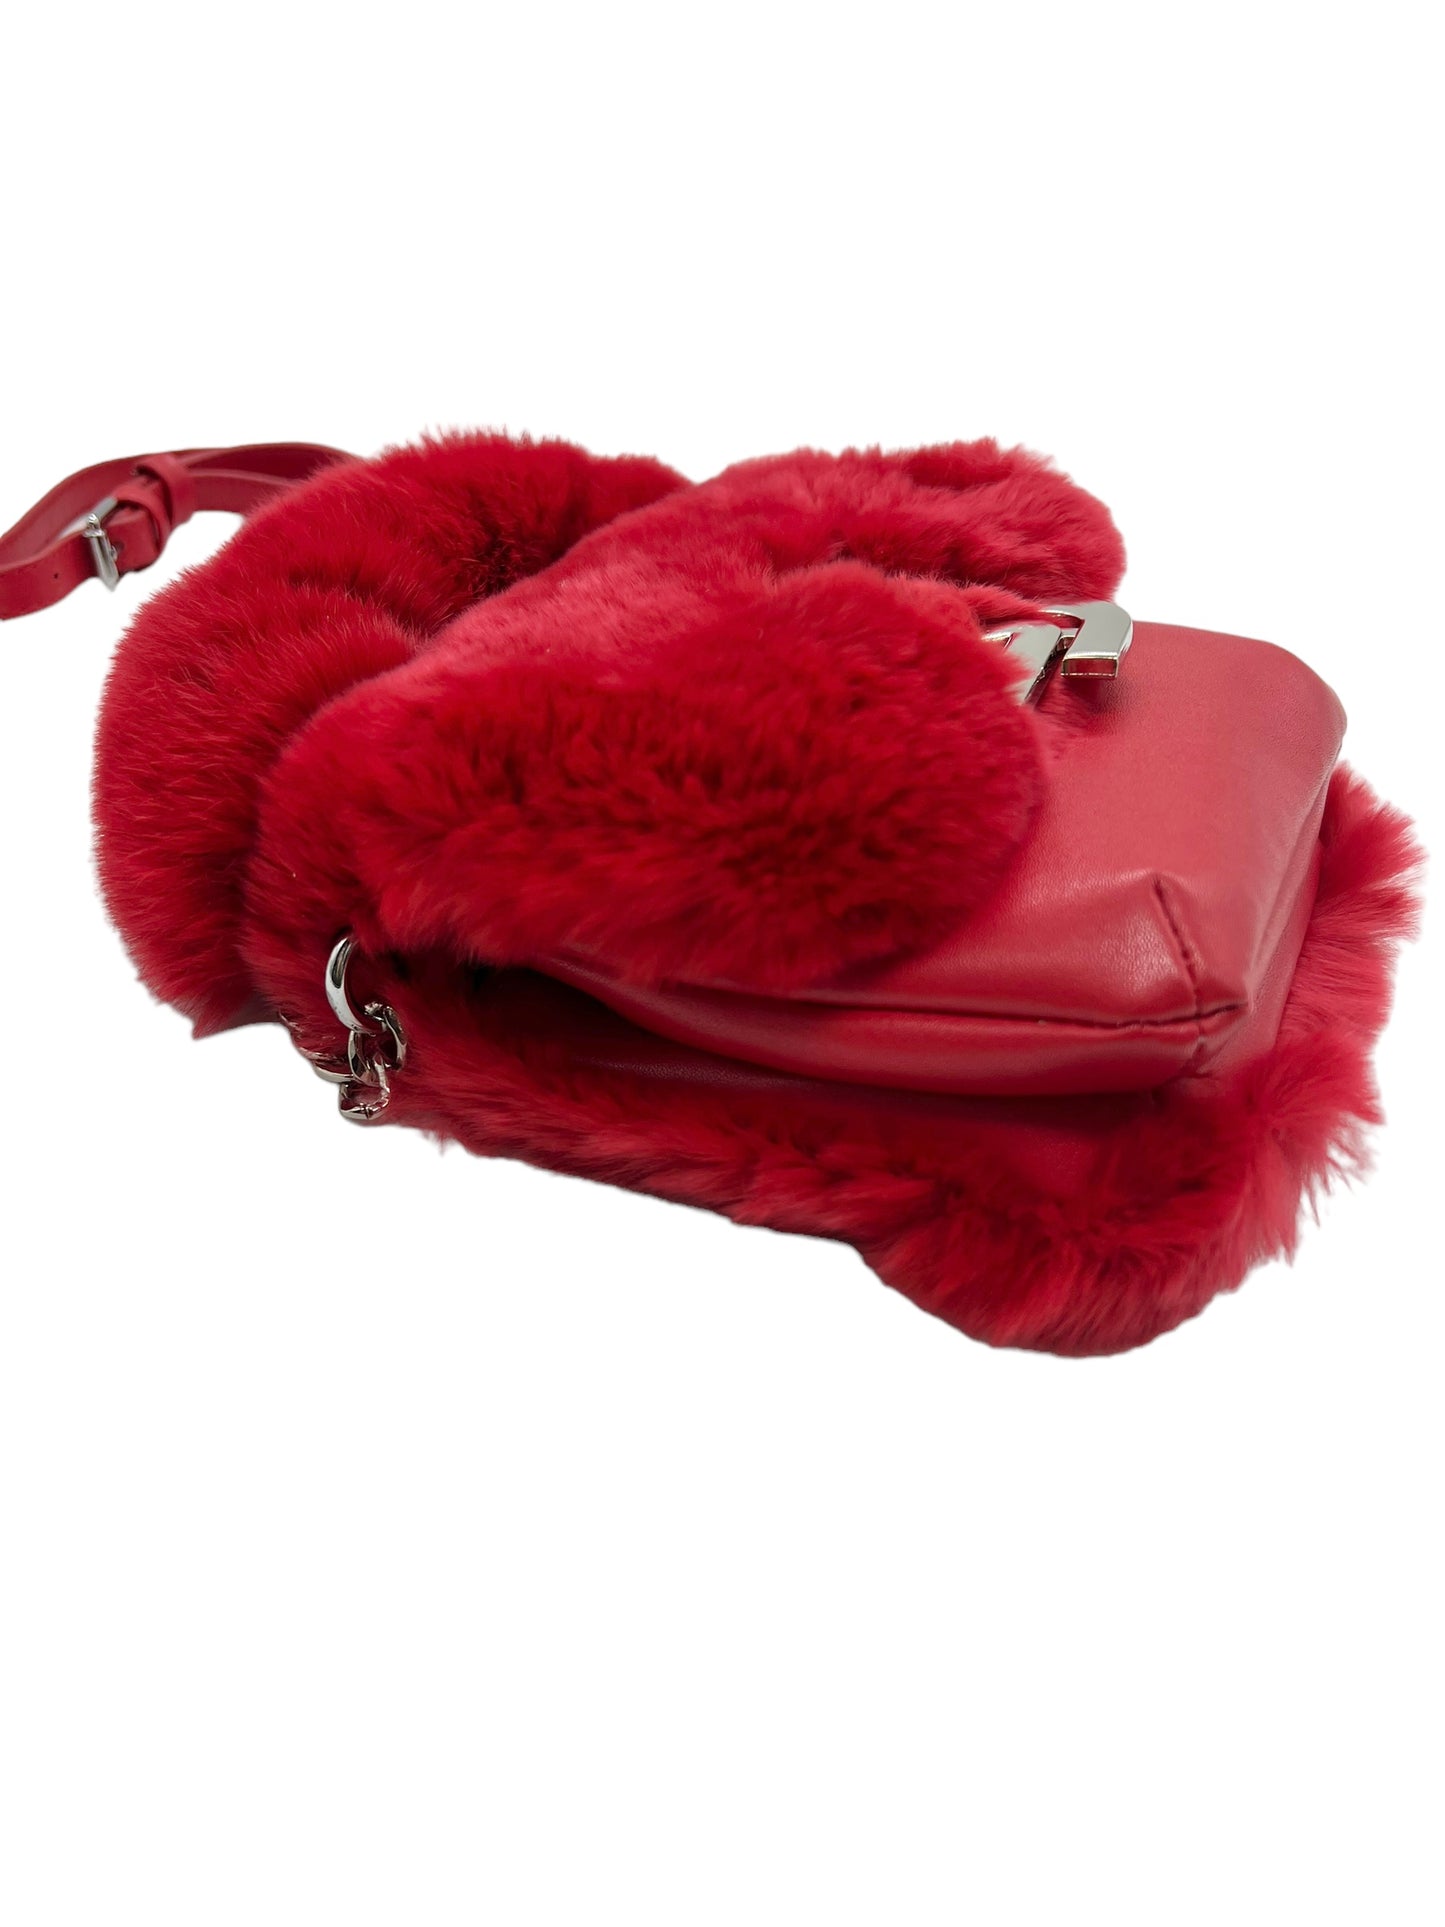 Shane Justin Red Fur Power Puff Chain Bag